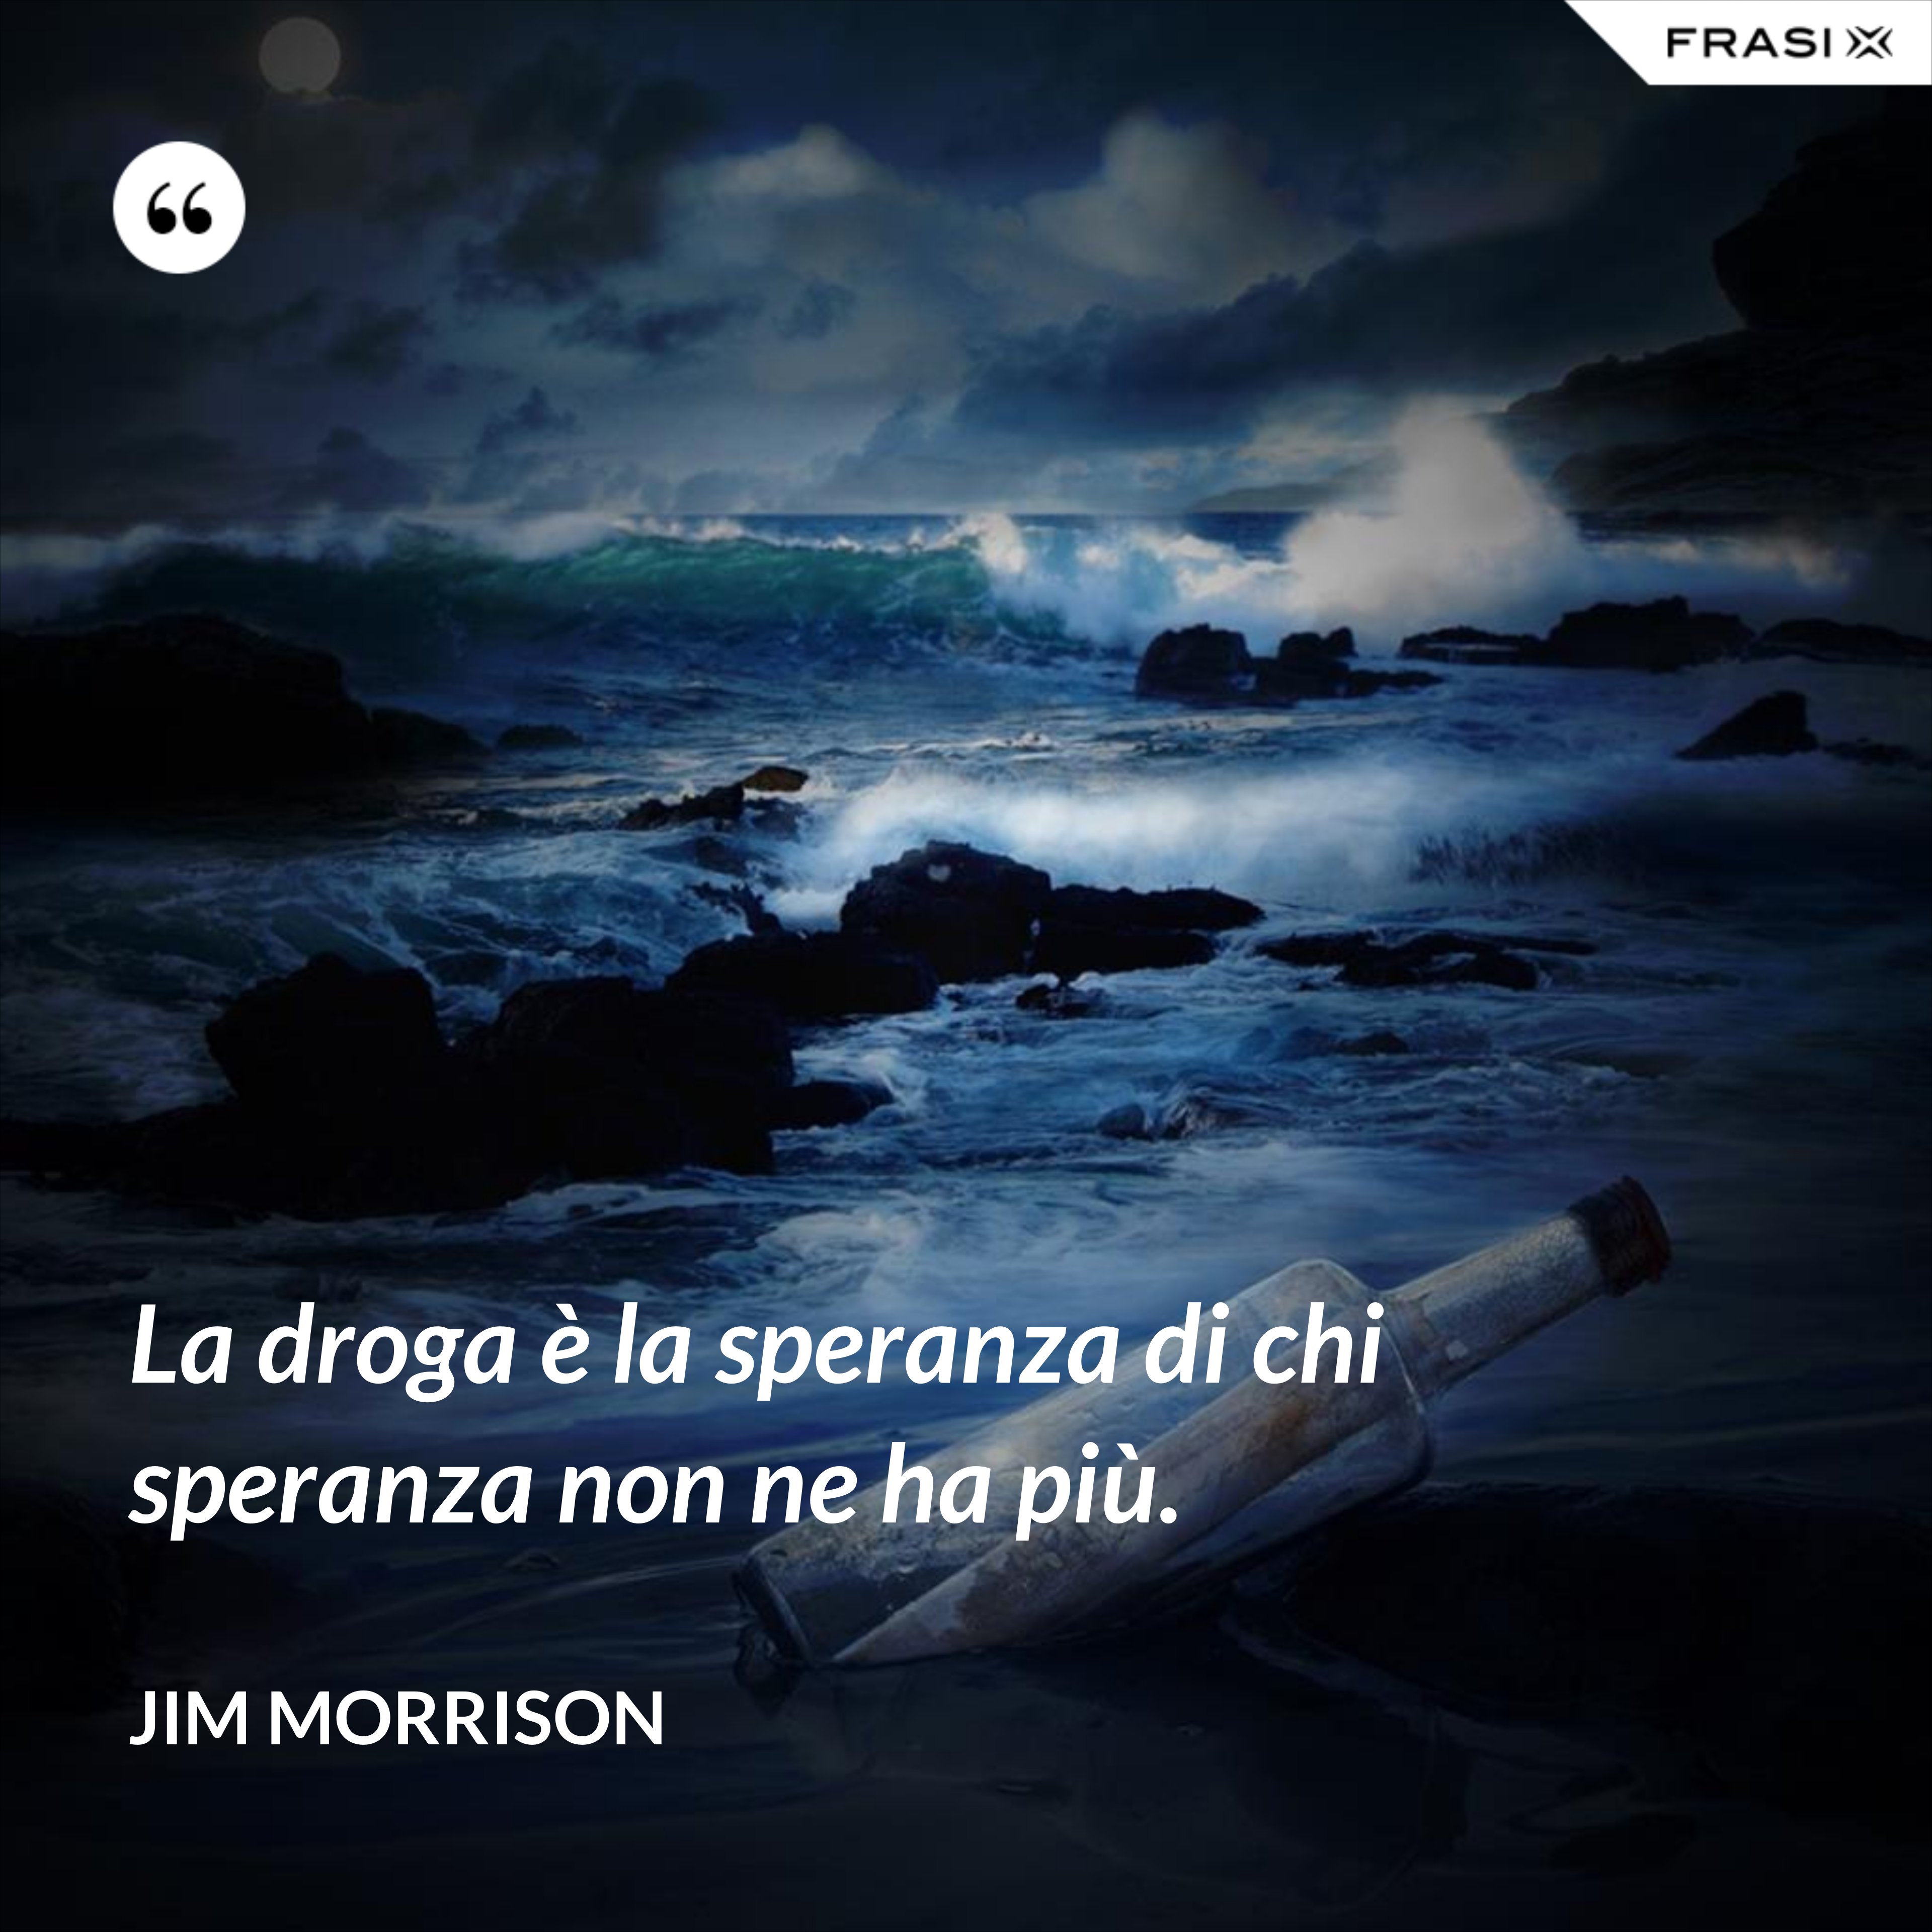 La droga è la speranza di chi speranza non ne ha più. - Jim Morrison